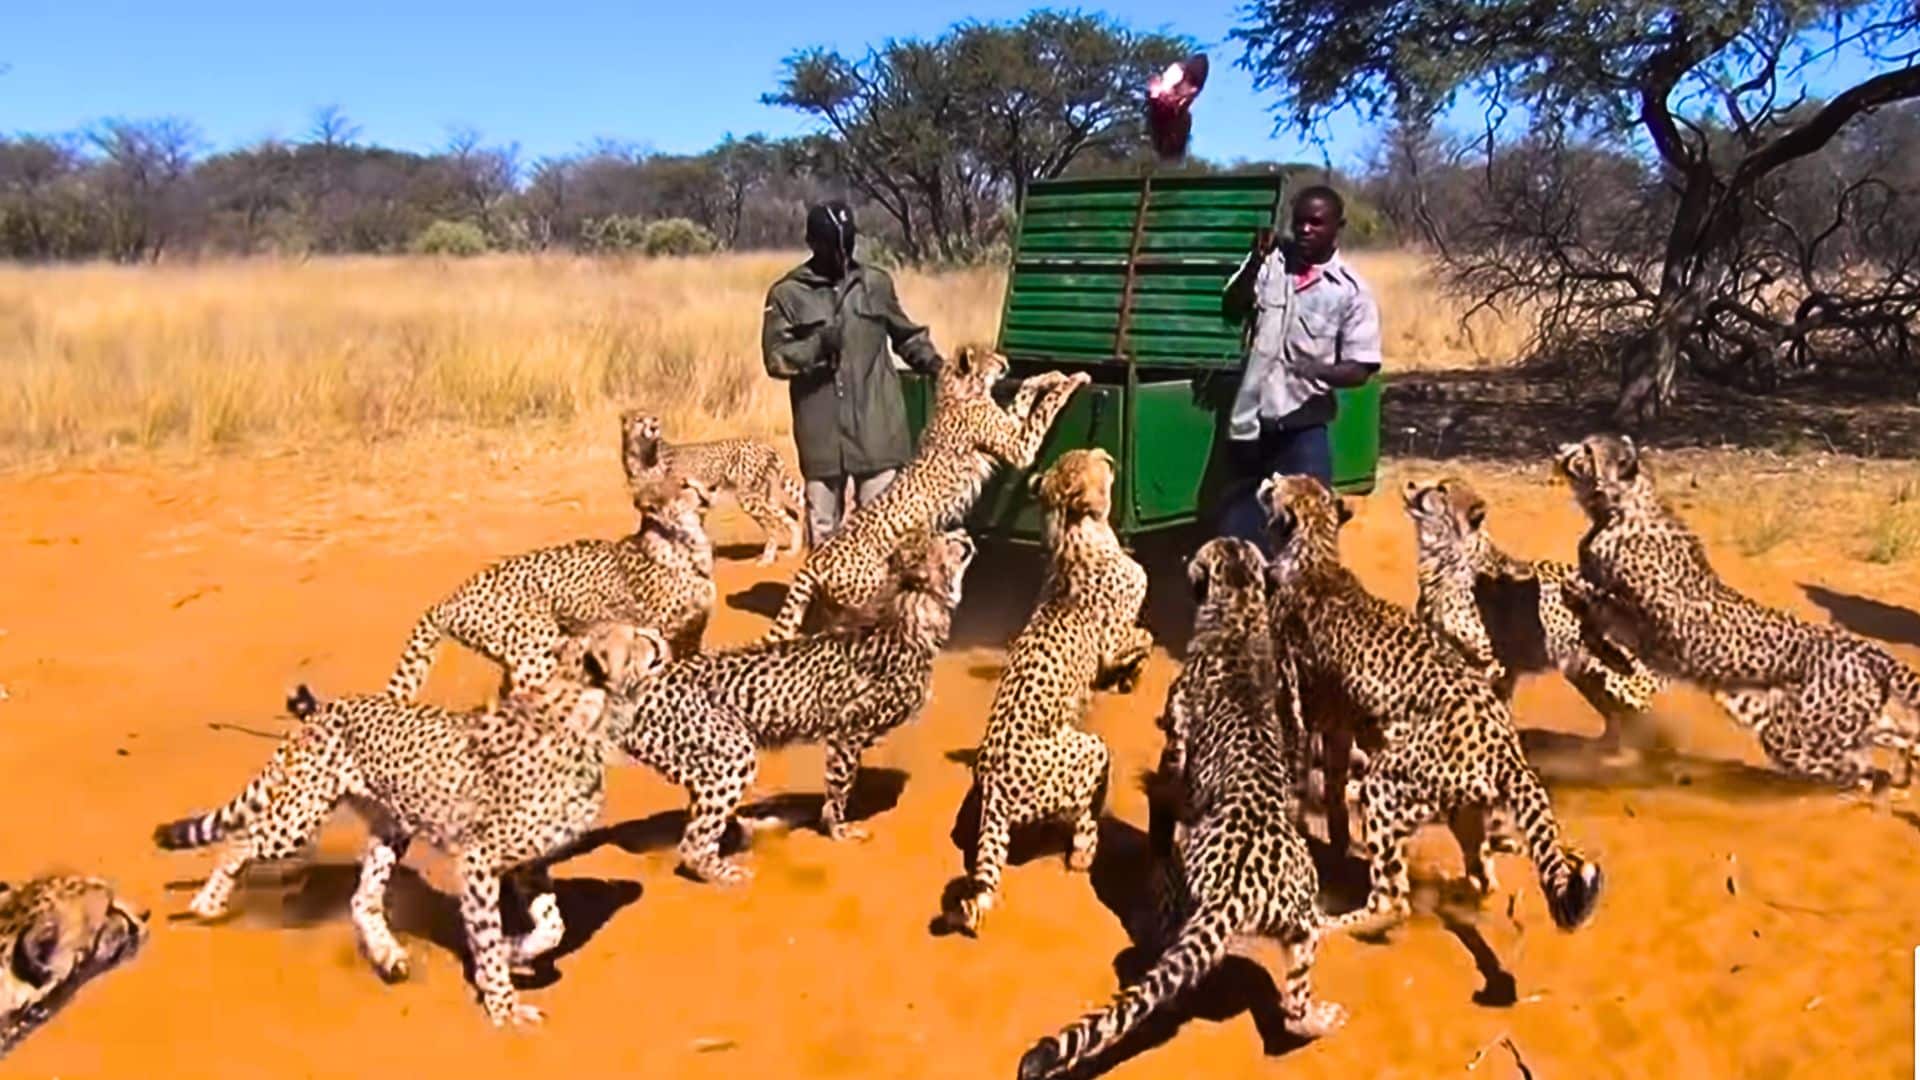 cheetahs being fed